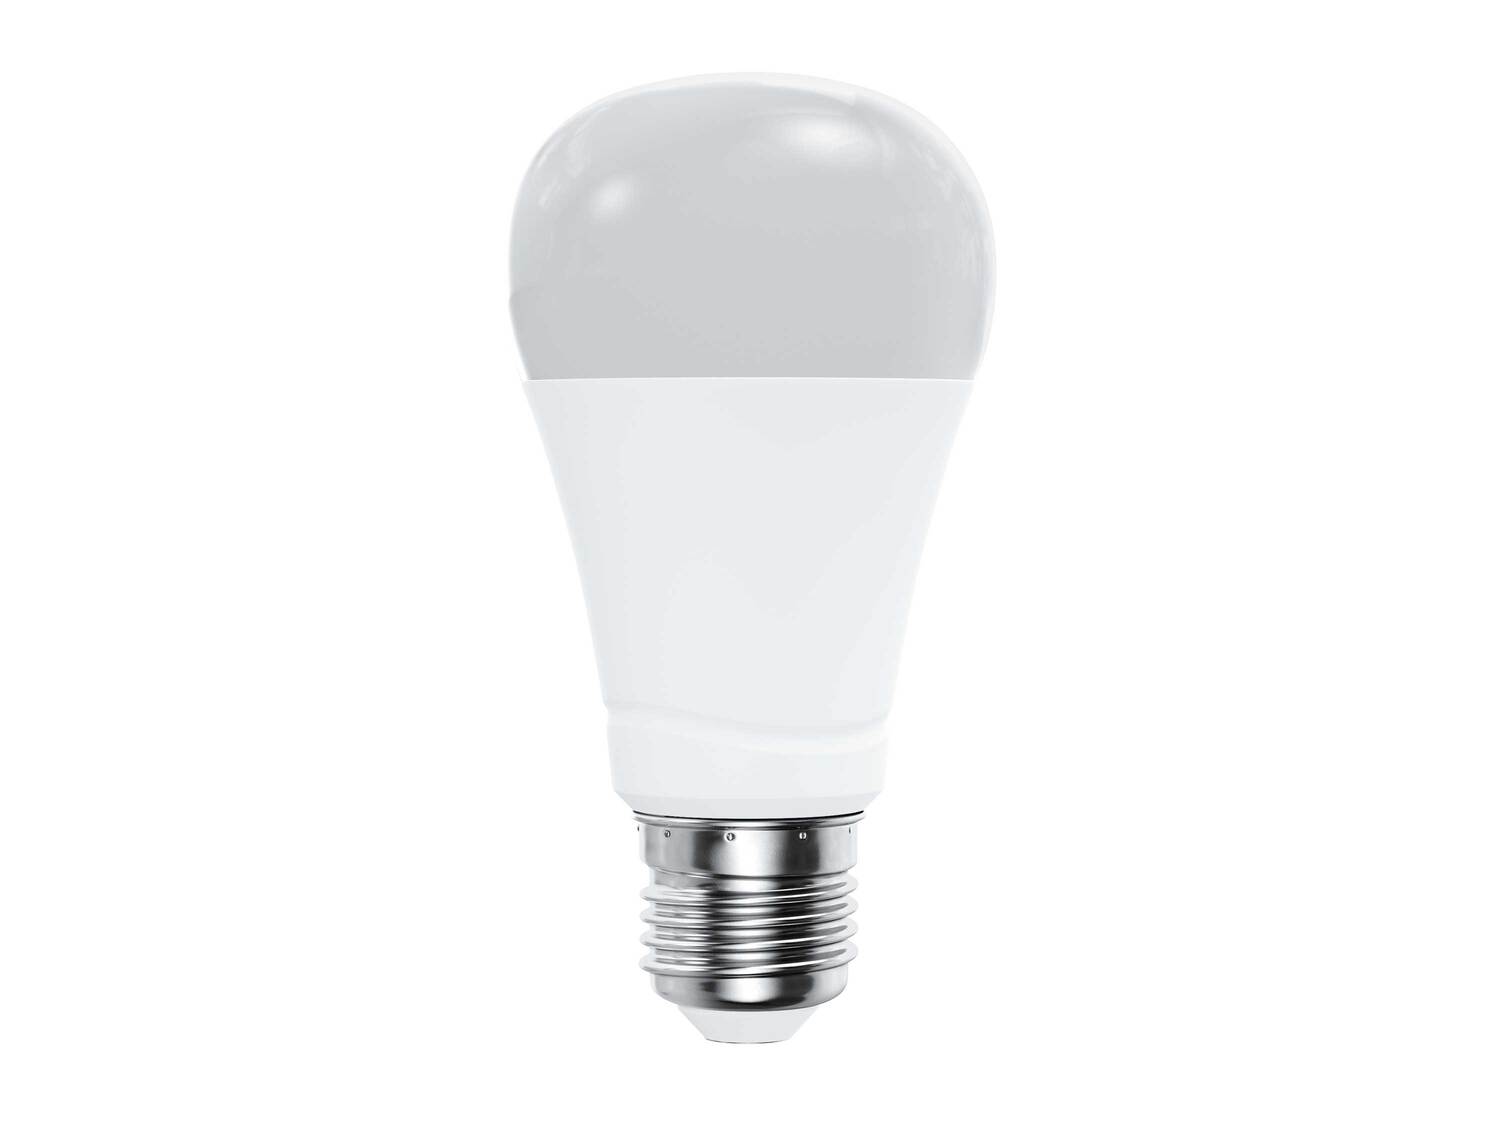 Ampoule LED connectée , le prix 8.99 € 
- Au choix :
- E14 : 6 W, 470 lm
- ...